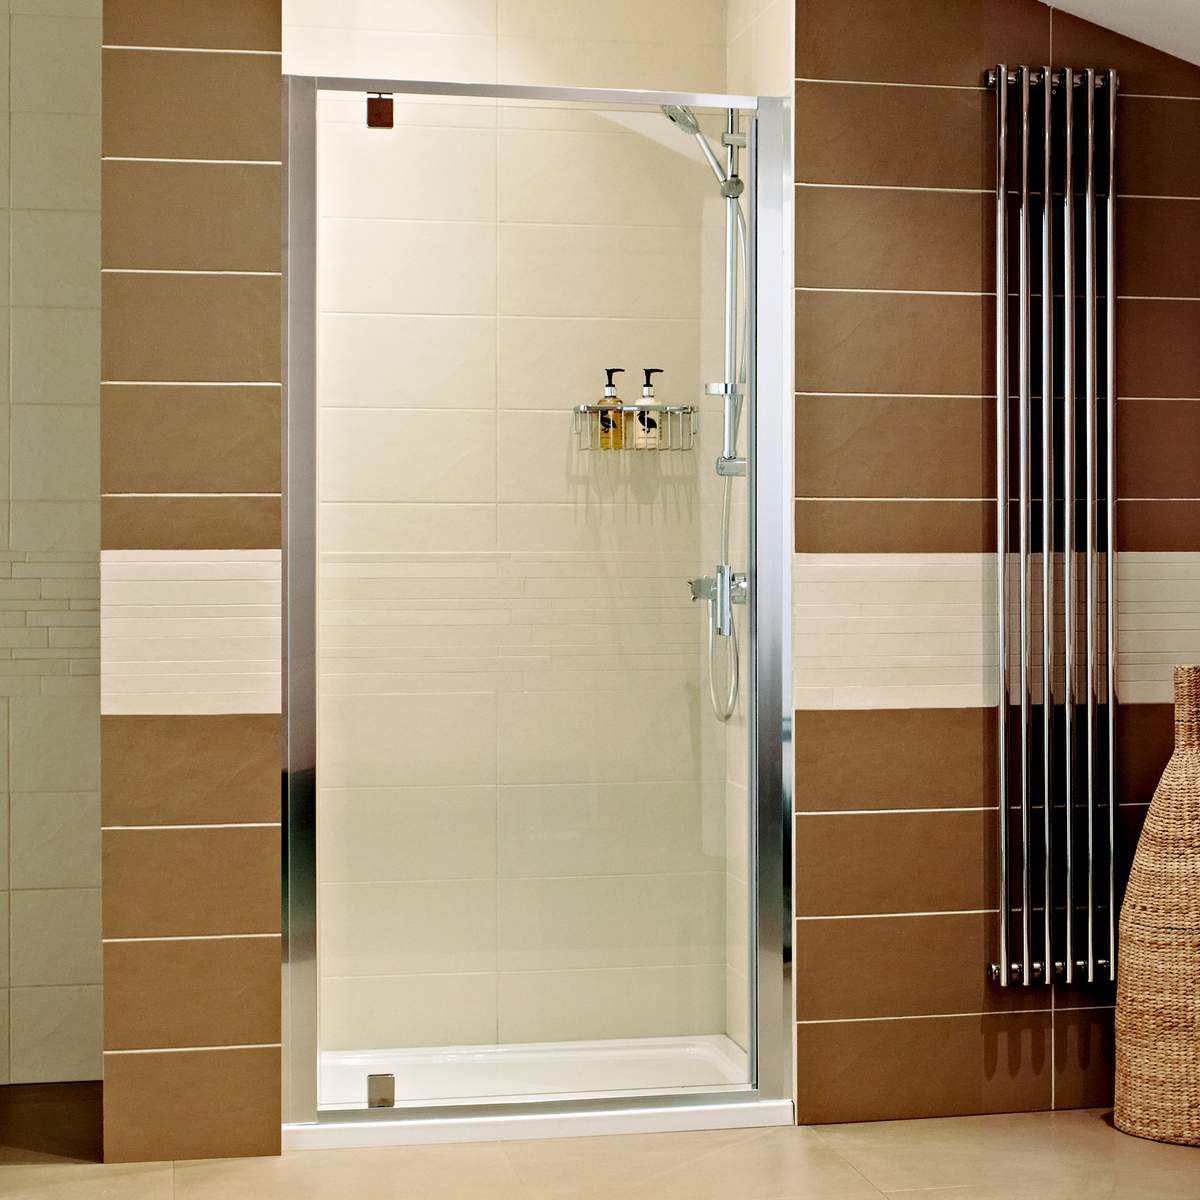 Shower door. Стеклянная дверь в душевую. Стеклянные двери для душевой. Пластиковая дверь для душа.